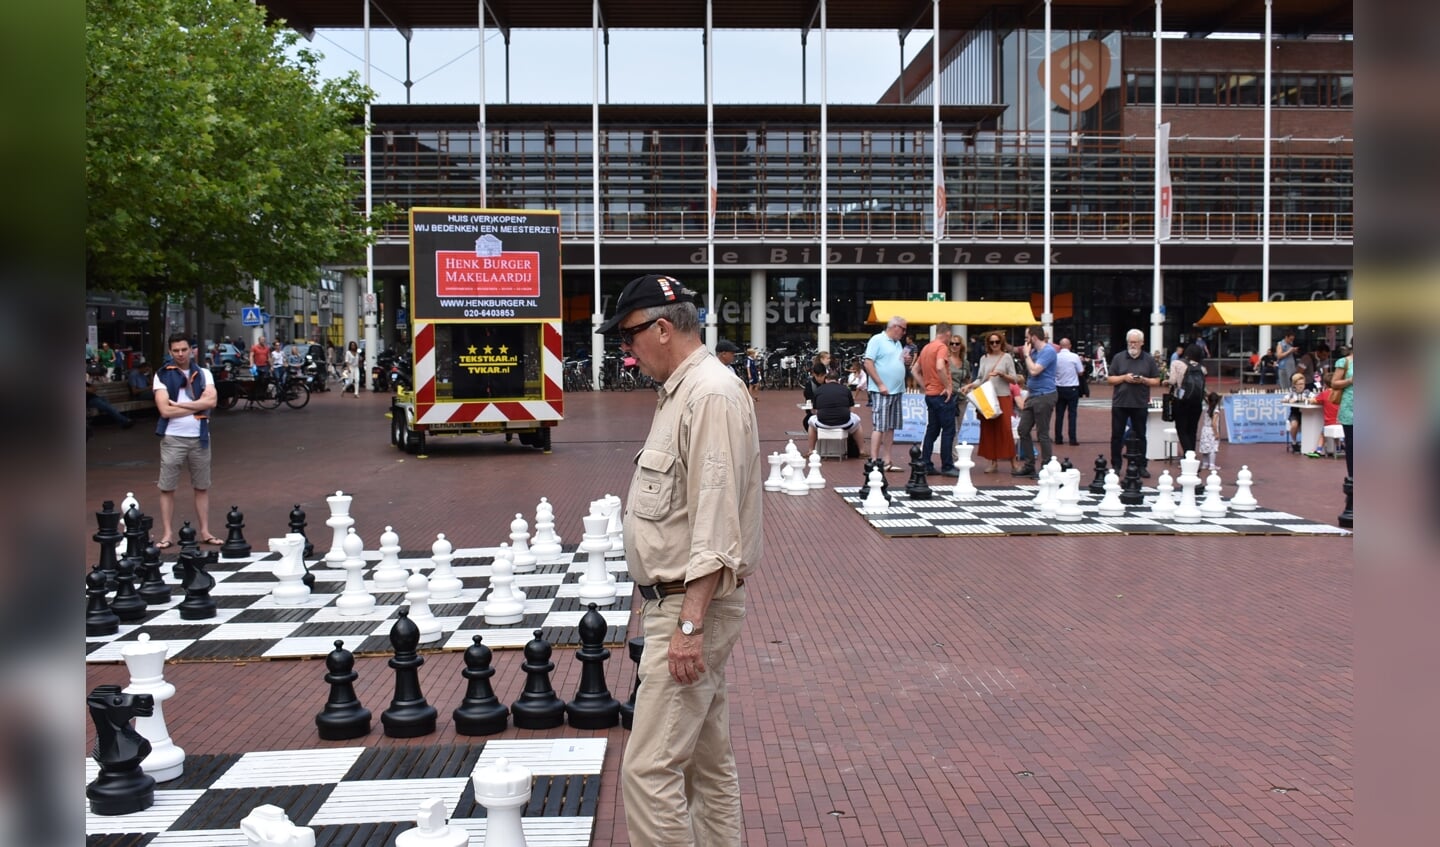 Hans Böhm schaakt ook dit jaar weer op Stadsplein.